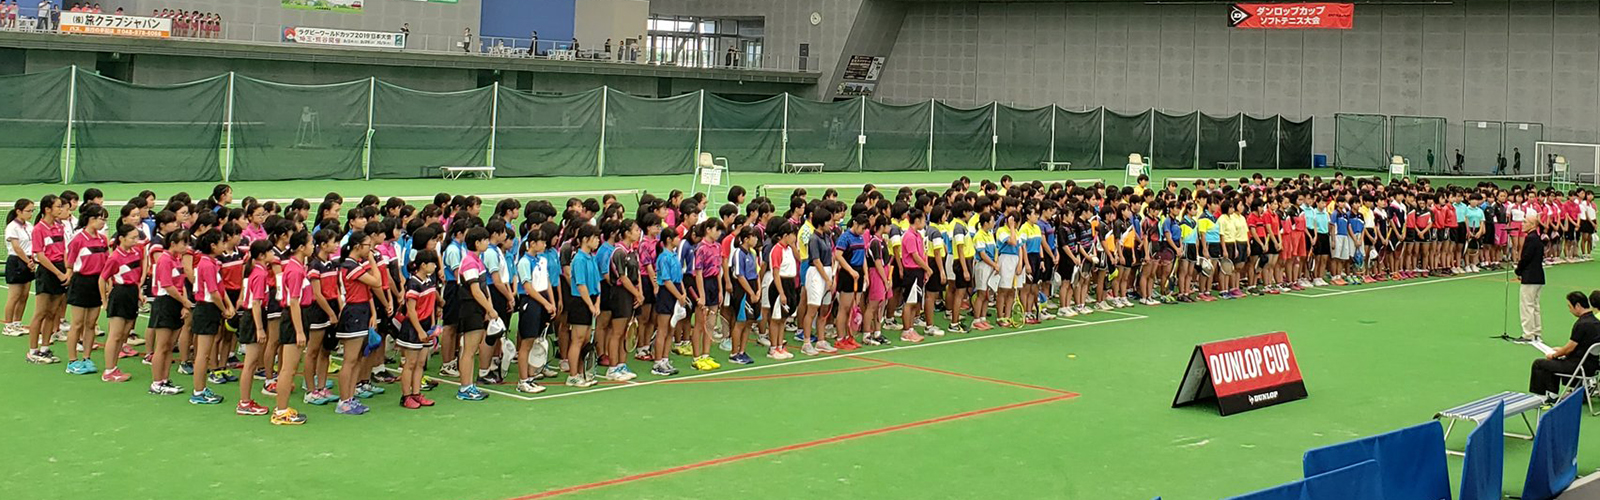 第13回 ダンロップカップ ソフトテニス中学生交流研修大会